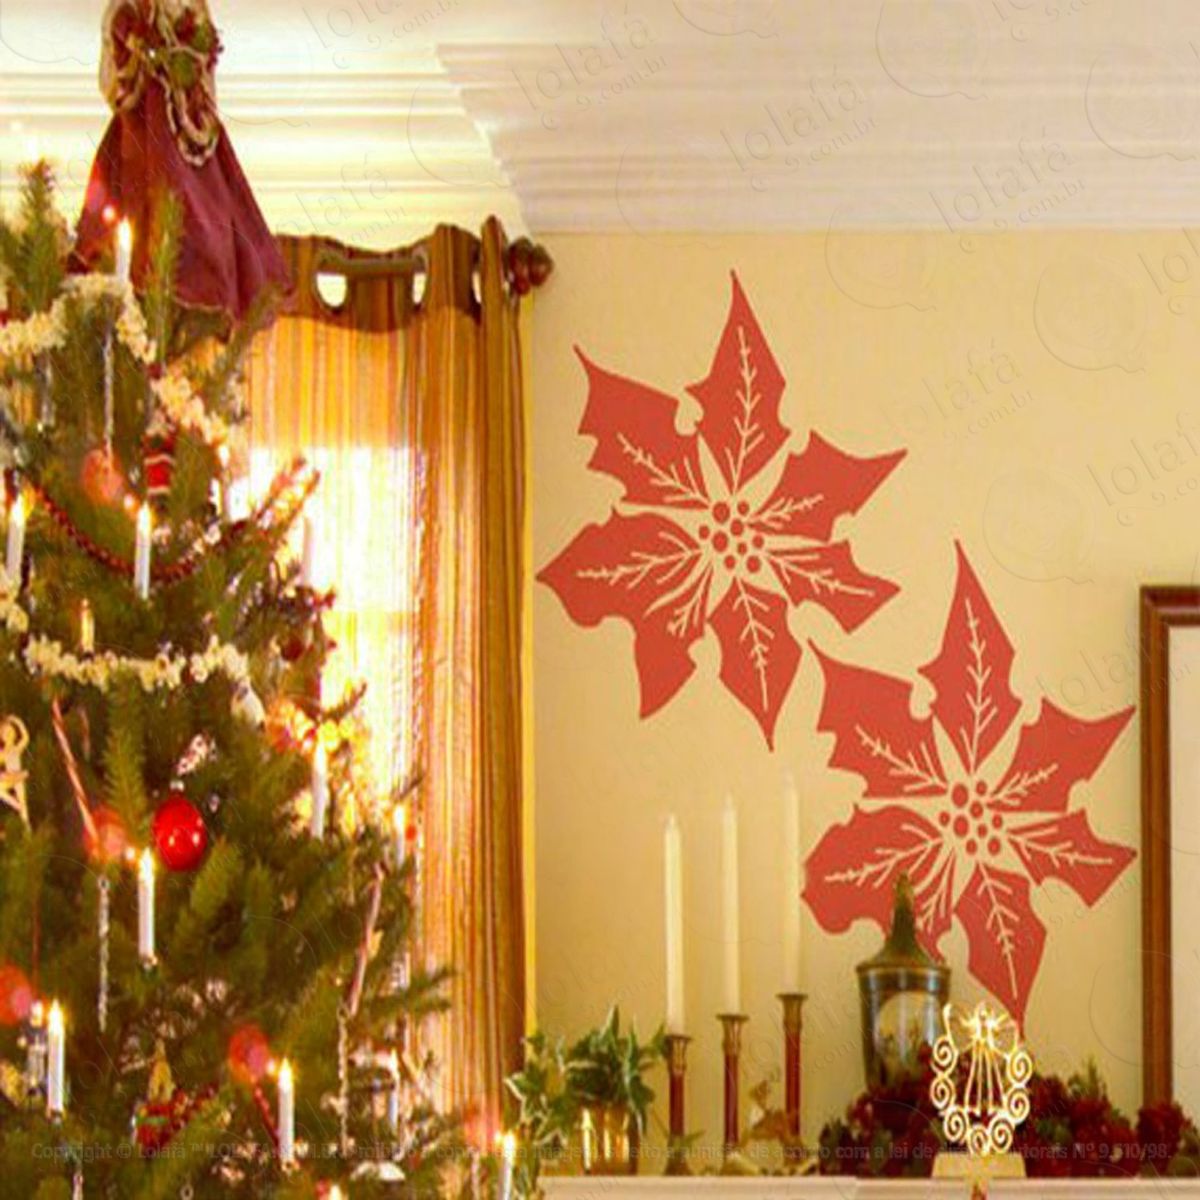 flores adesivo de natal para vitrine, parede, porta de vidro - decoração natalina mod:112